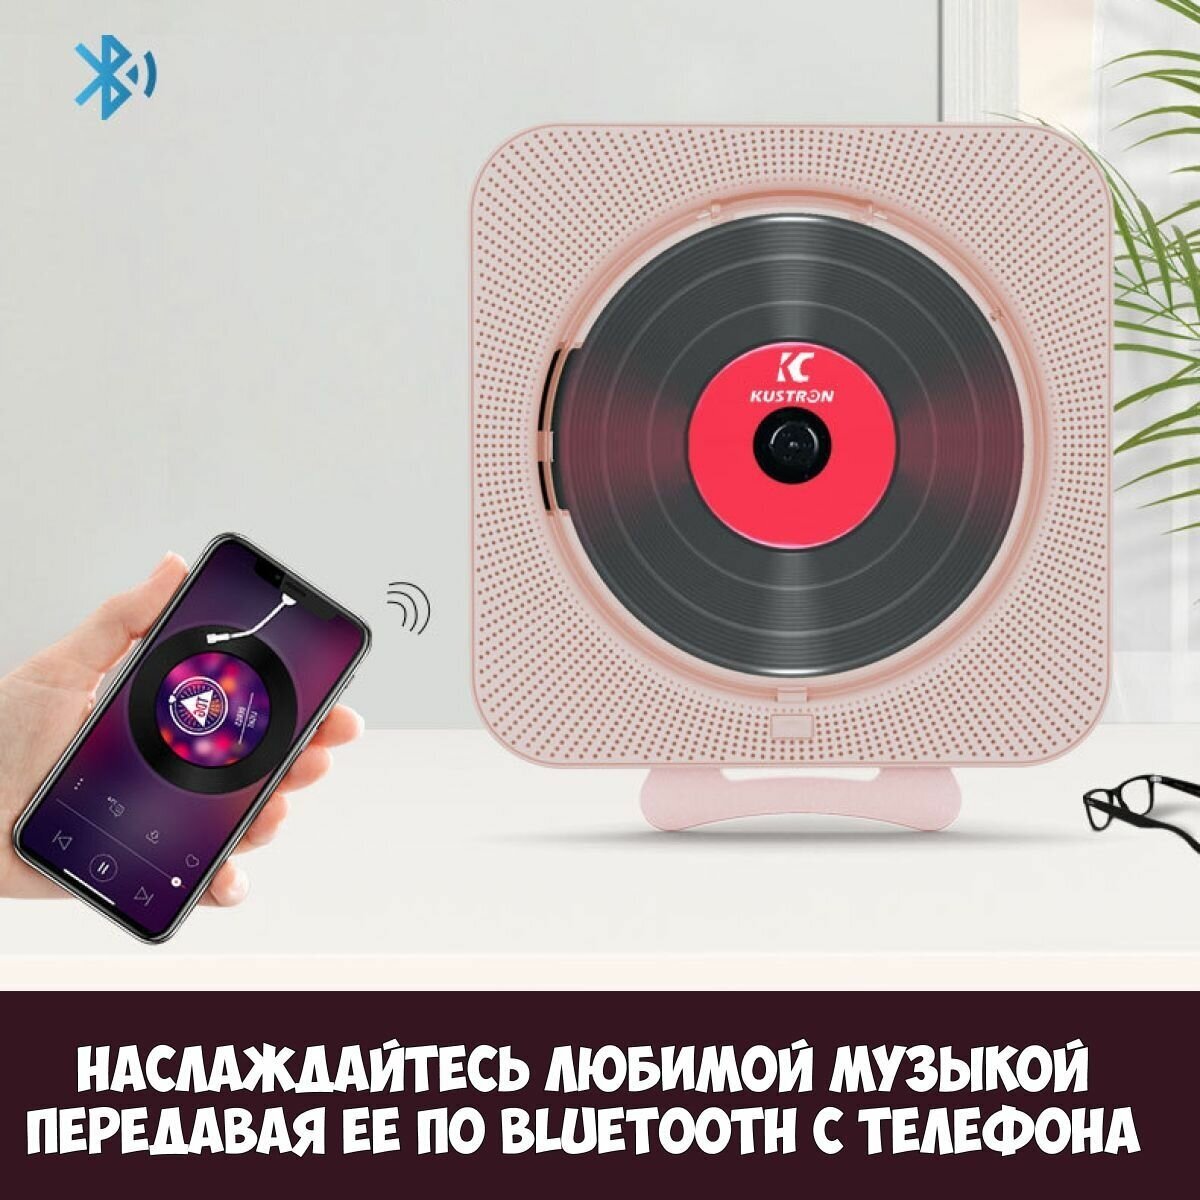 Bluetooth CD плеер c LED дисплеем и пультом управления (розовый)